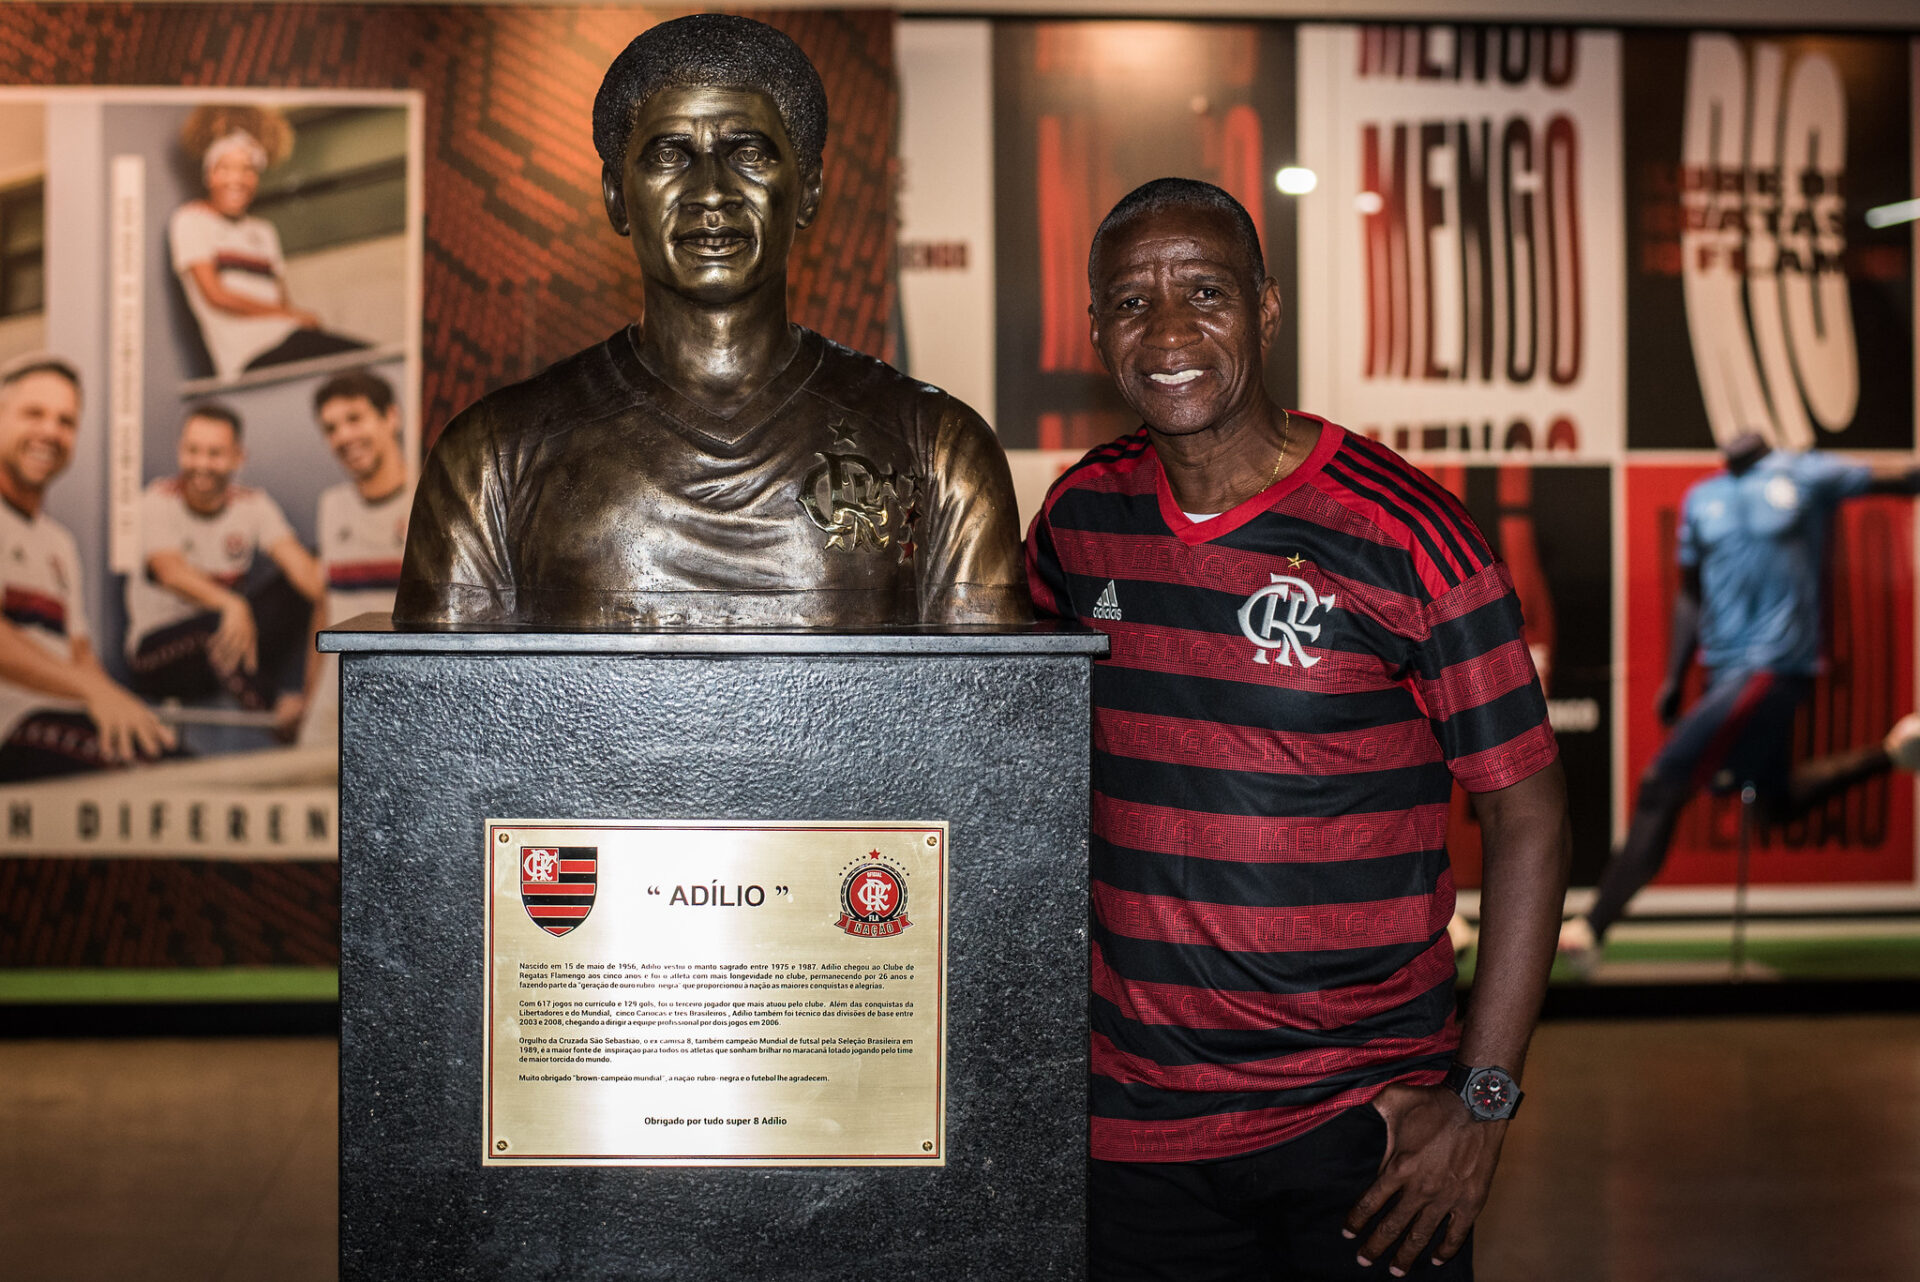 Morre Adílio, um dos maiores ídolos do Flamengo, aos 68 anos